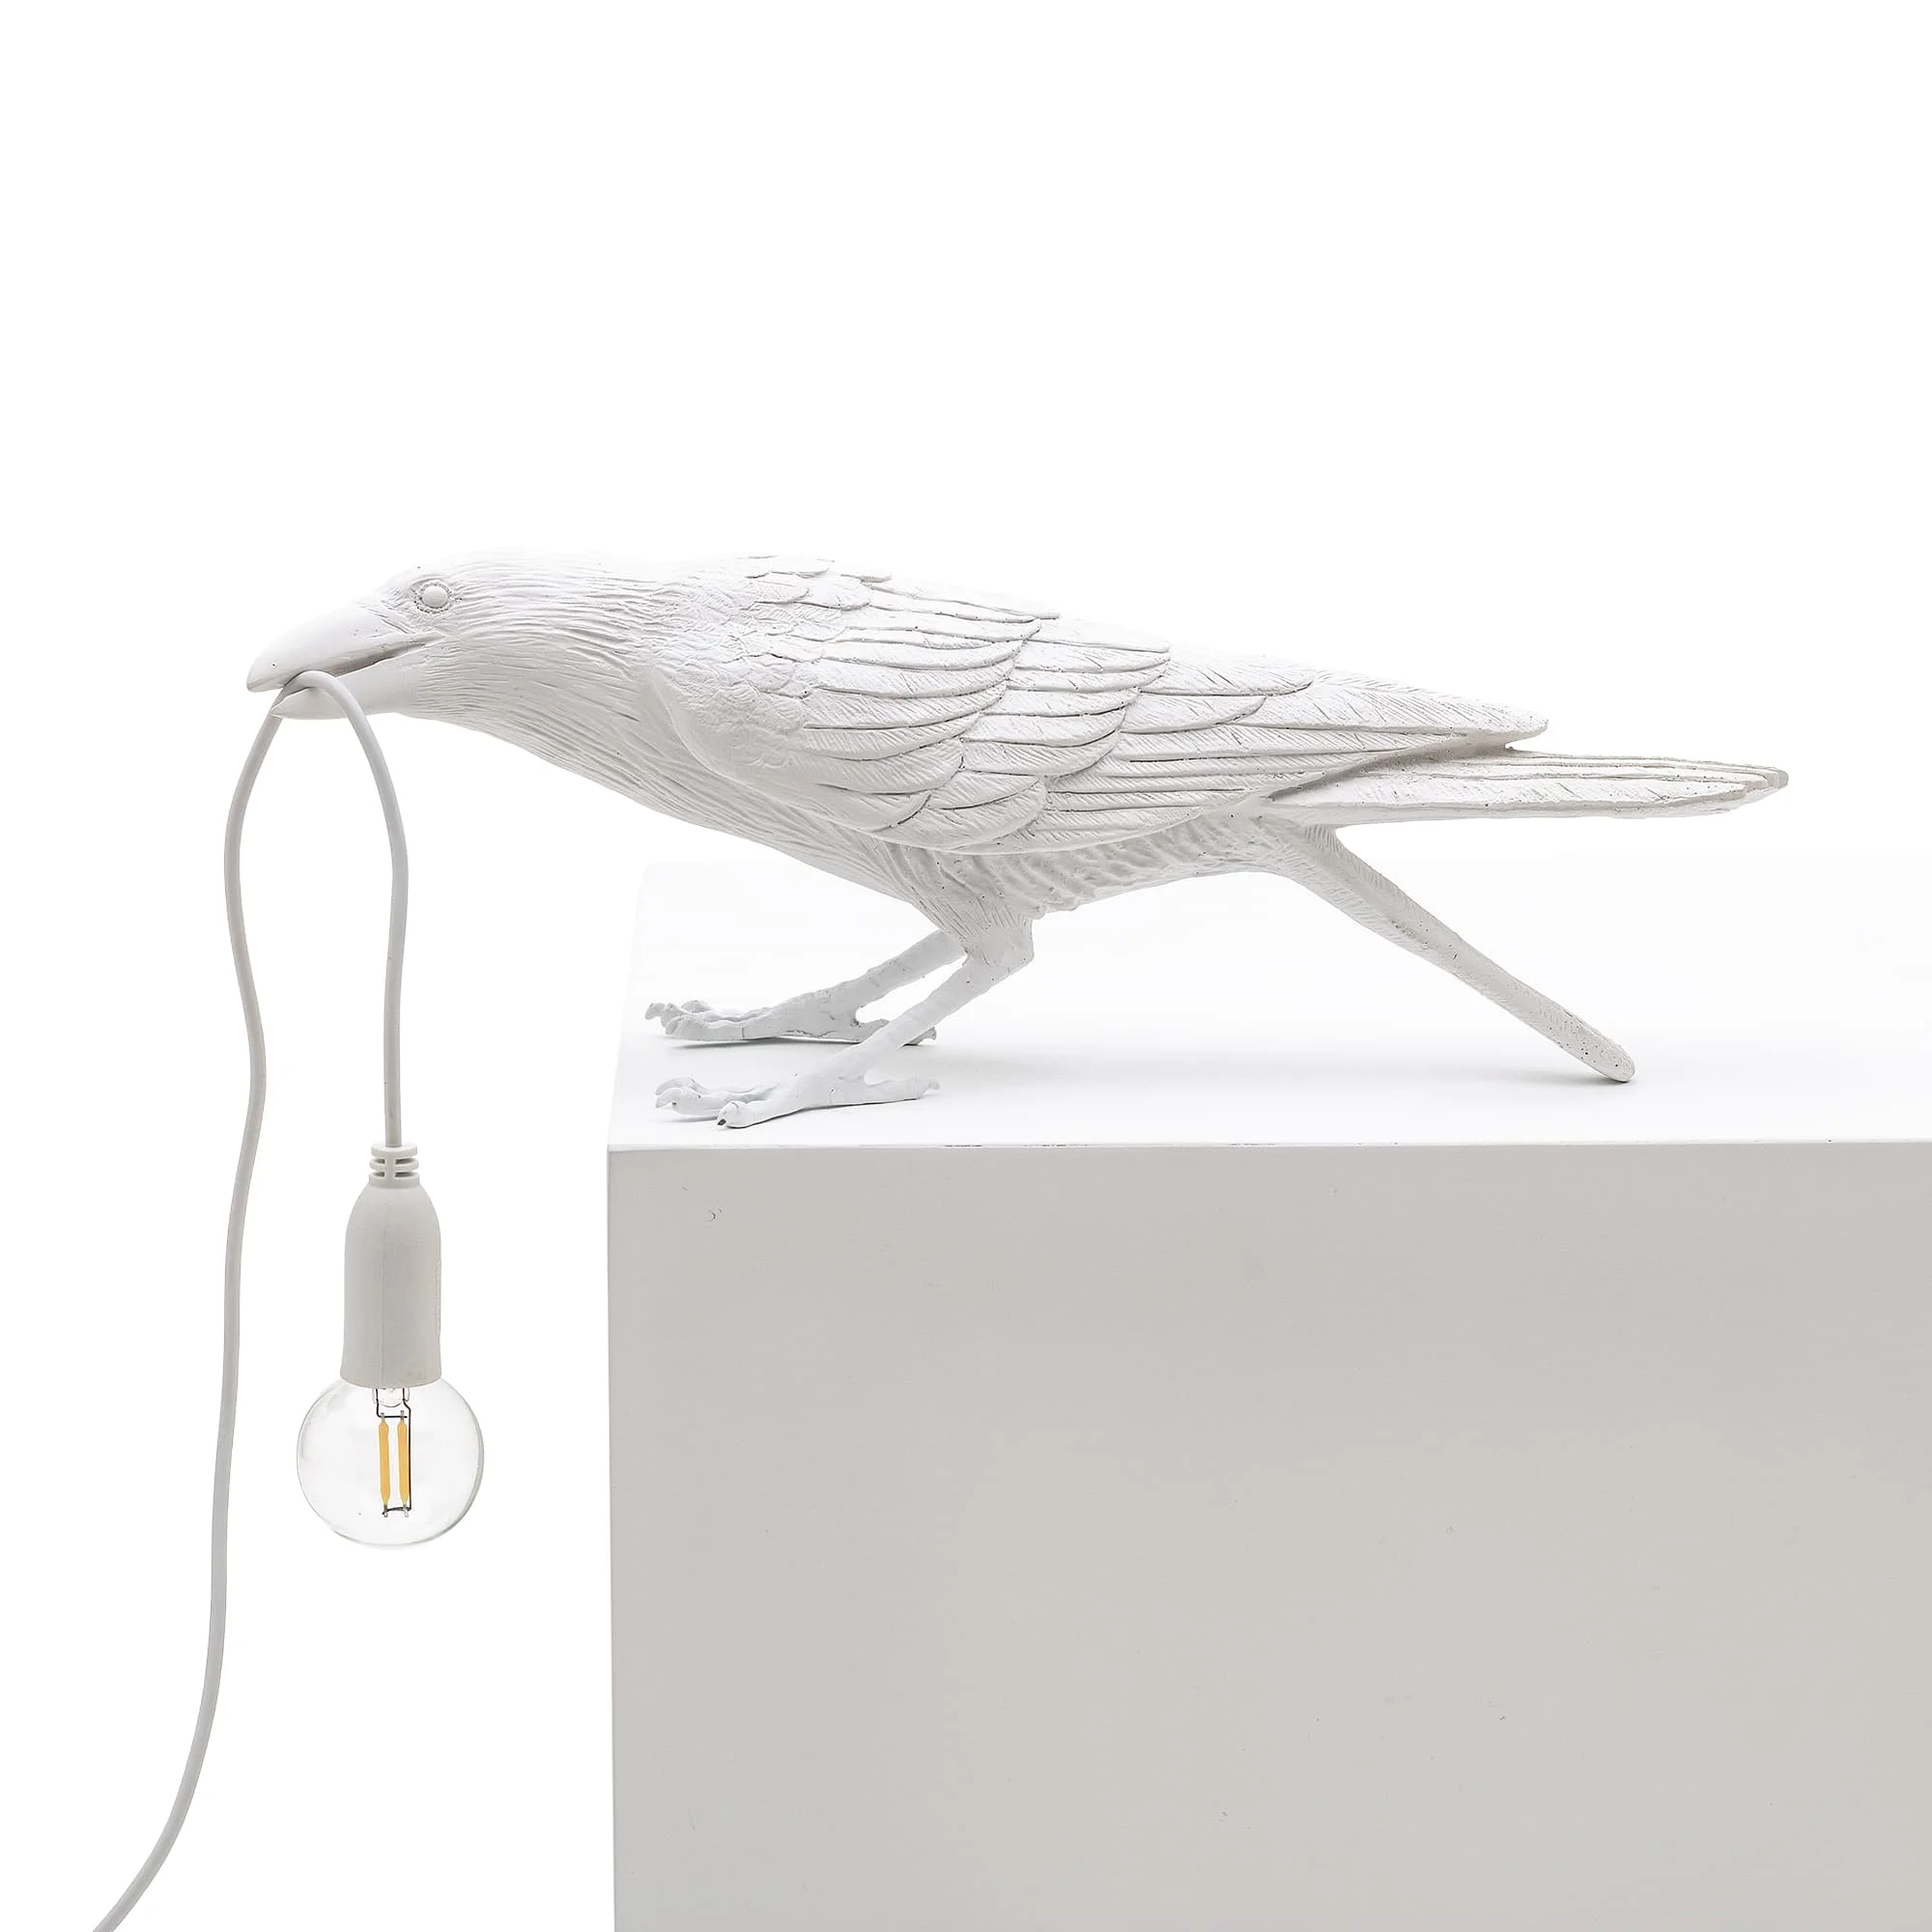 Итальянская светодиодная настенная лампа Seletti с птицами, художественный декор, настенная лампа для дома с птицами, лампа для гостиной с птицами, мебель для животных, лампа для птиц